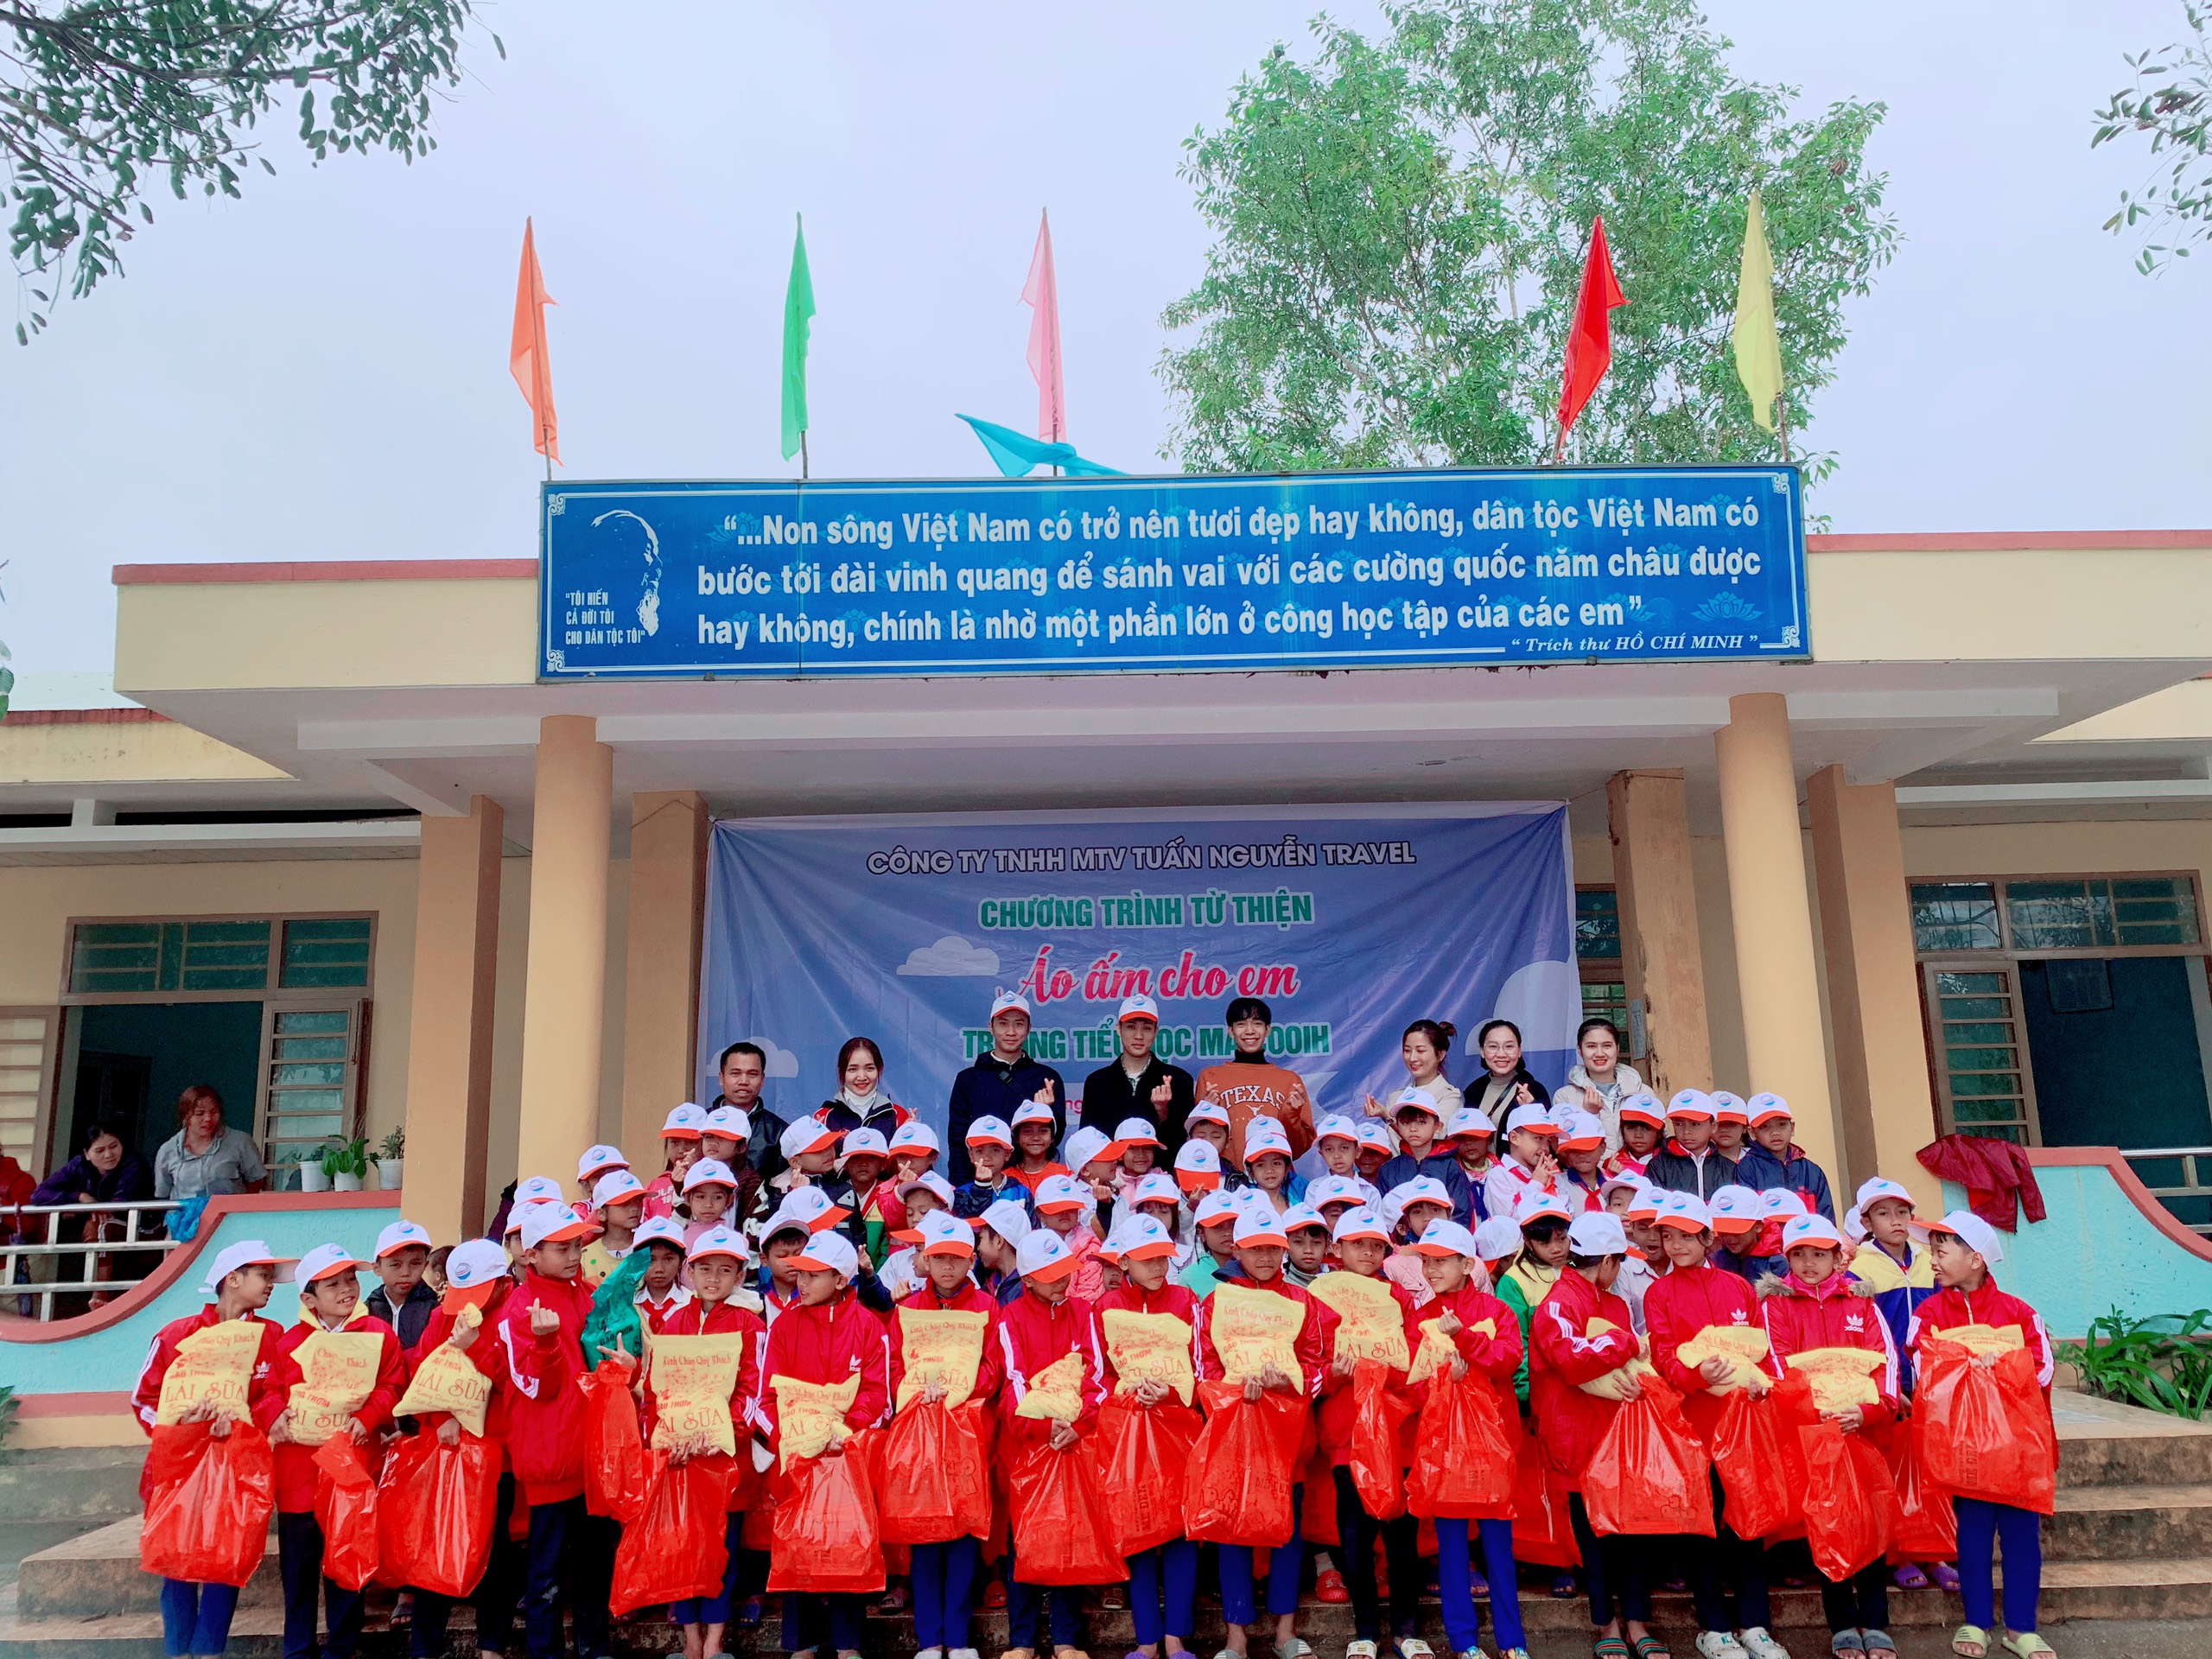 Tuấn Nguyễn Travel từ thiện: Hành trình thiện nguyện chia sẻ yêu thương "áo ấm cho em" 